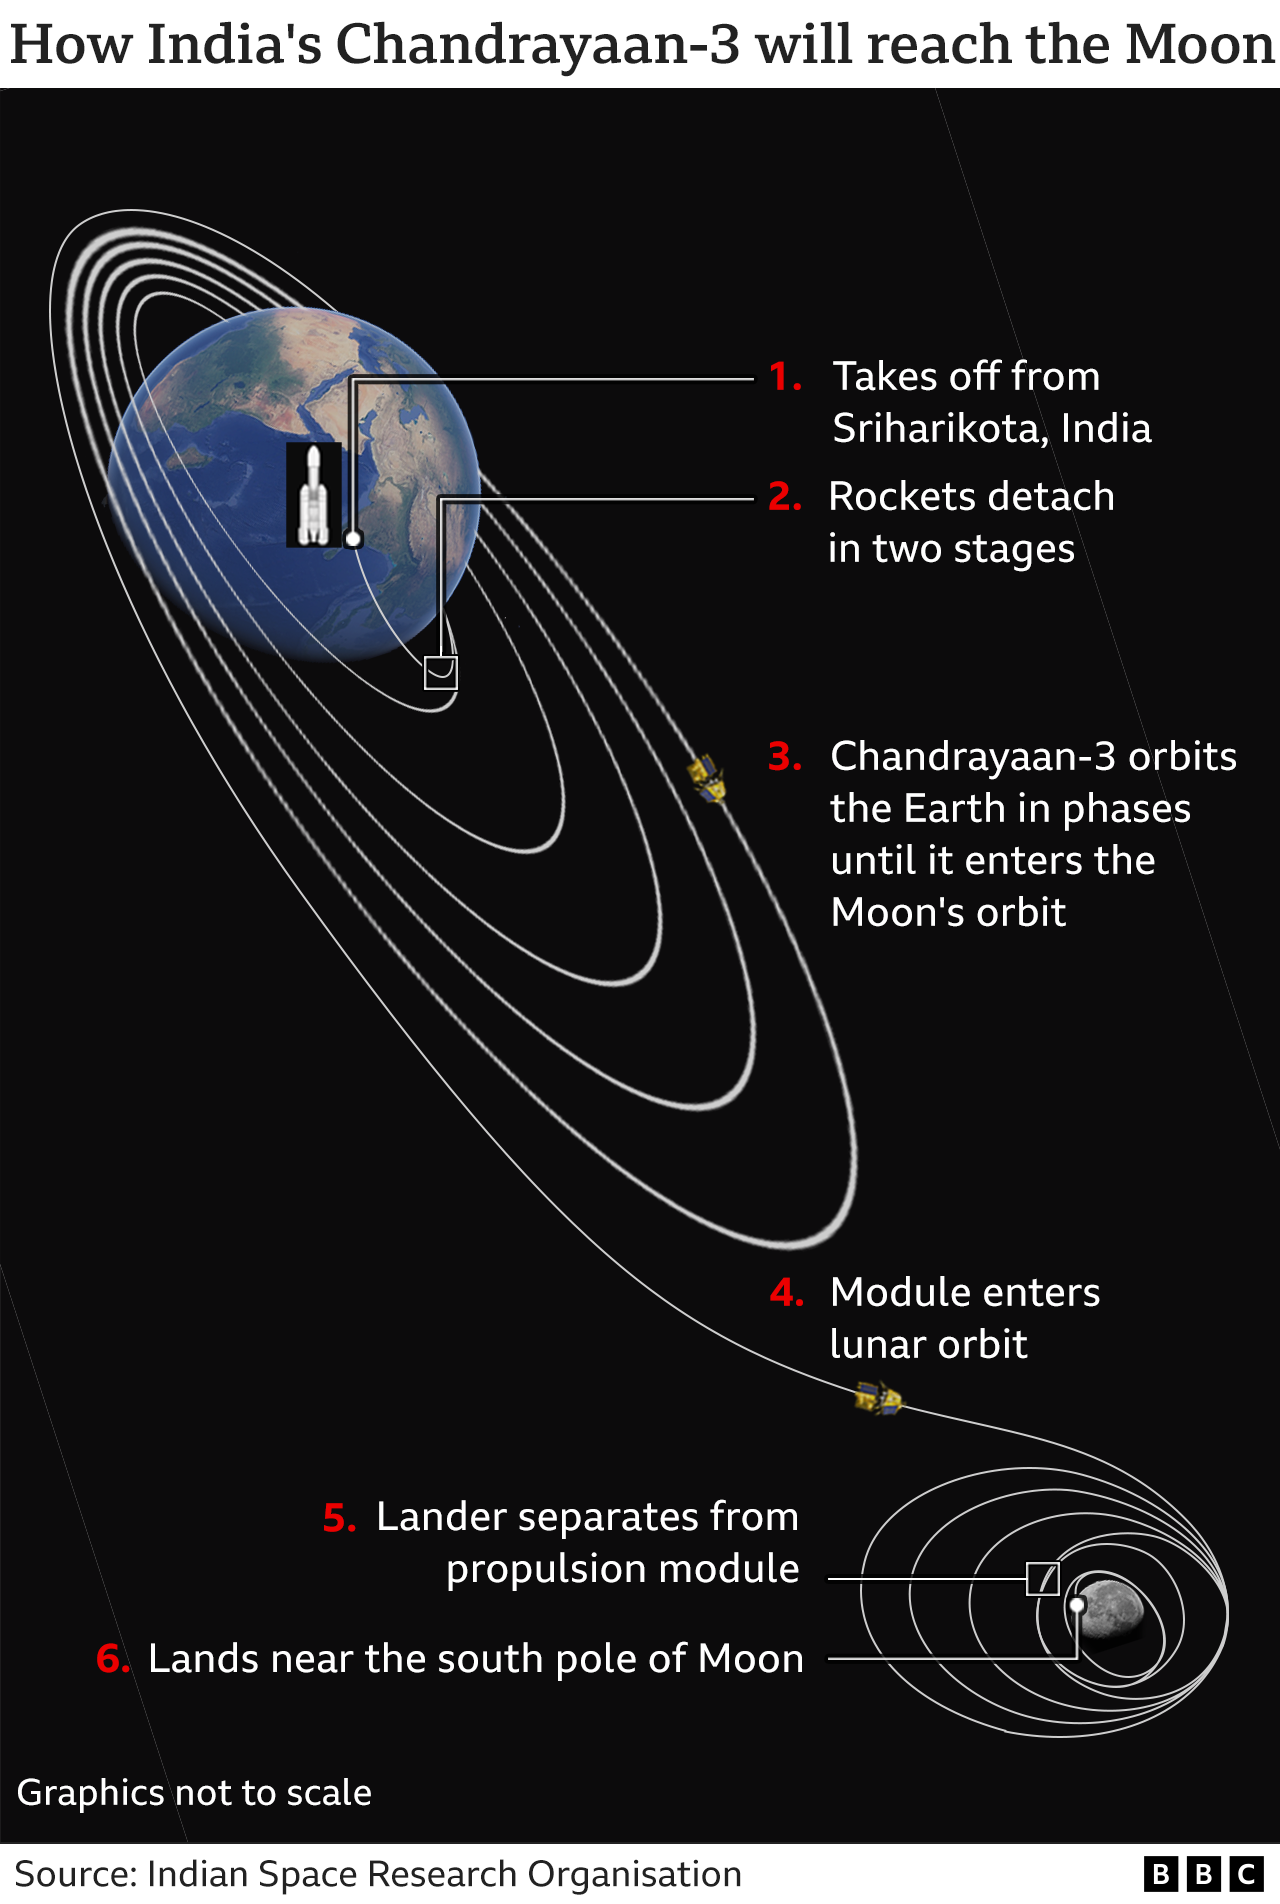 График, показывающий, как Chandrayaan-3 доберется до Луны, от взлета до обращения вокруг Земли по фазам, пока он не достигнет орбиты Луны, когда посадочный модуль отделится от двигательного модуля и приземлится возле южного полюса Луны